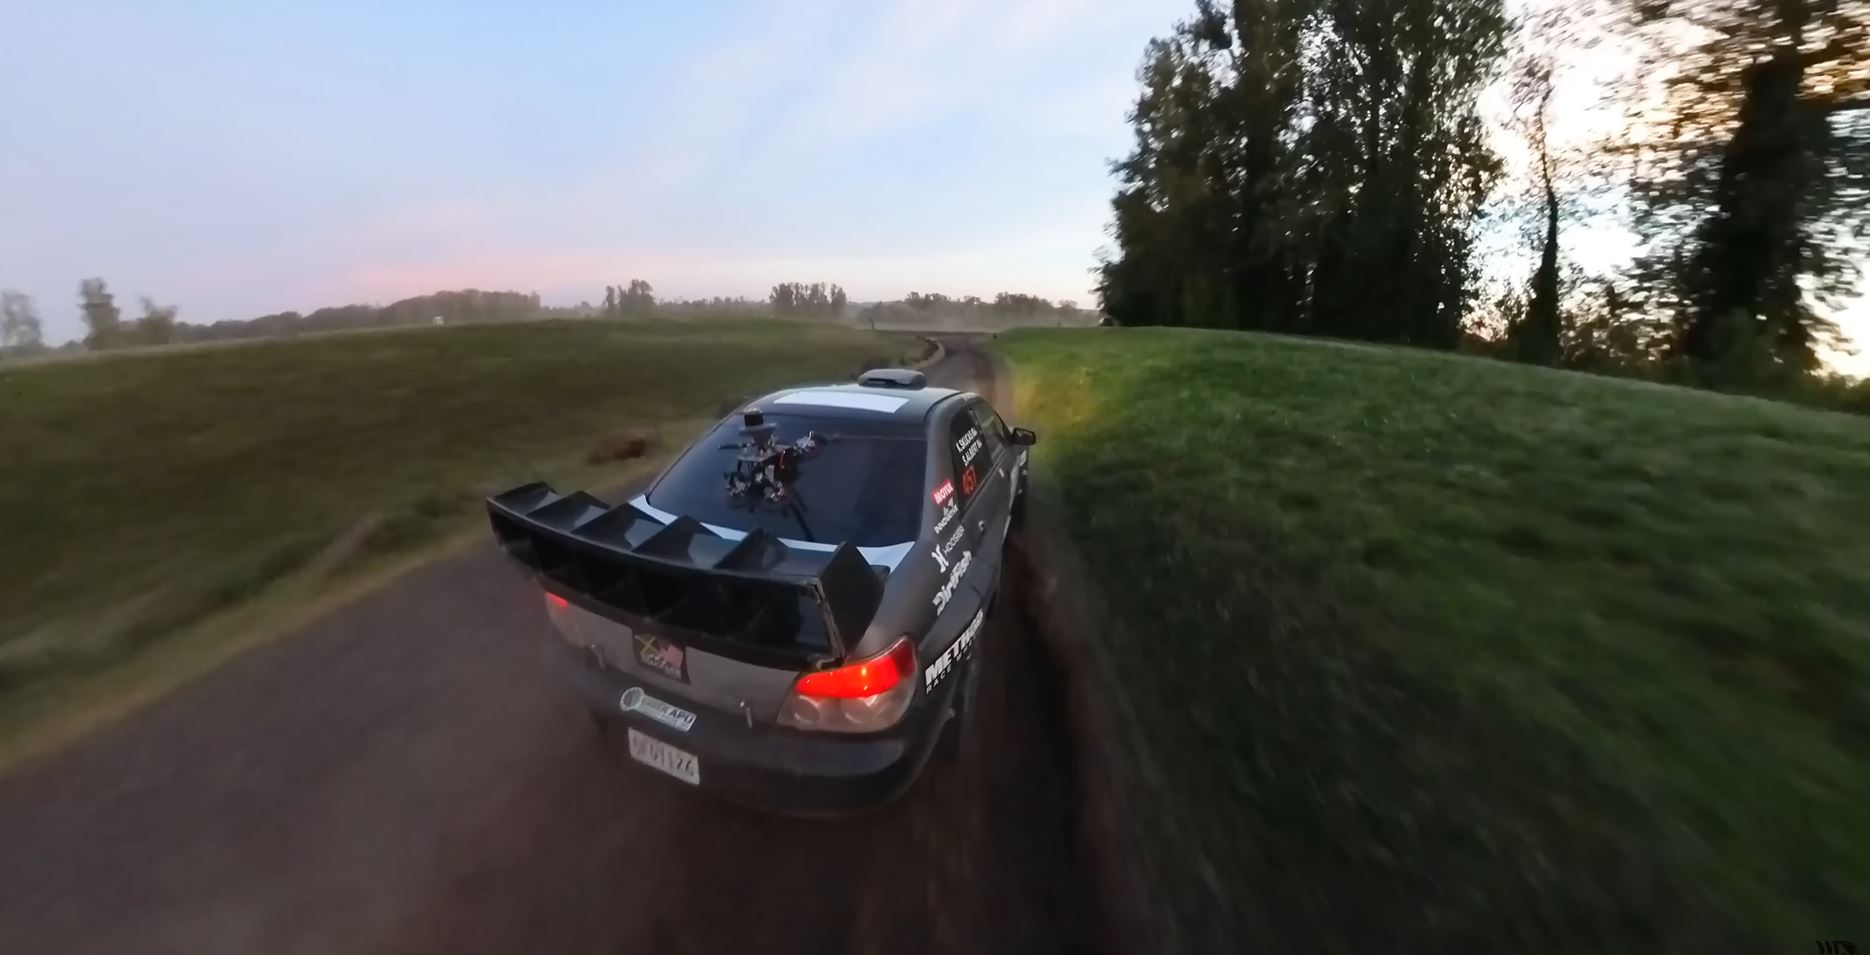 Gravação real parece de videogame com um carro de rali Subaru WRX